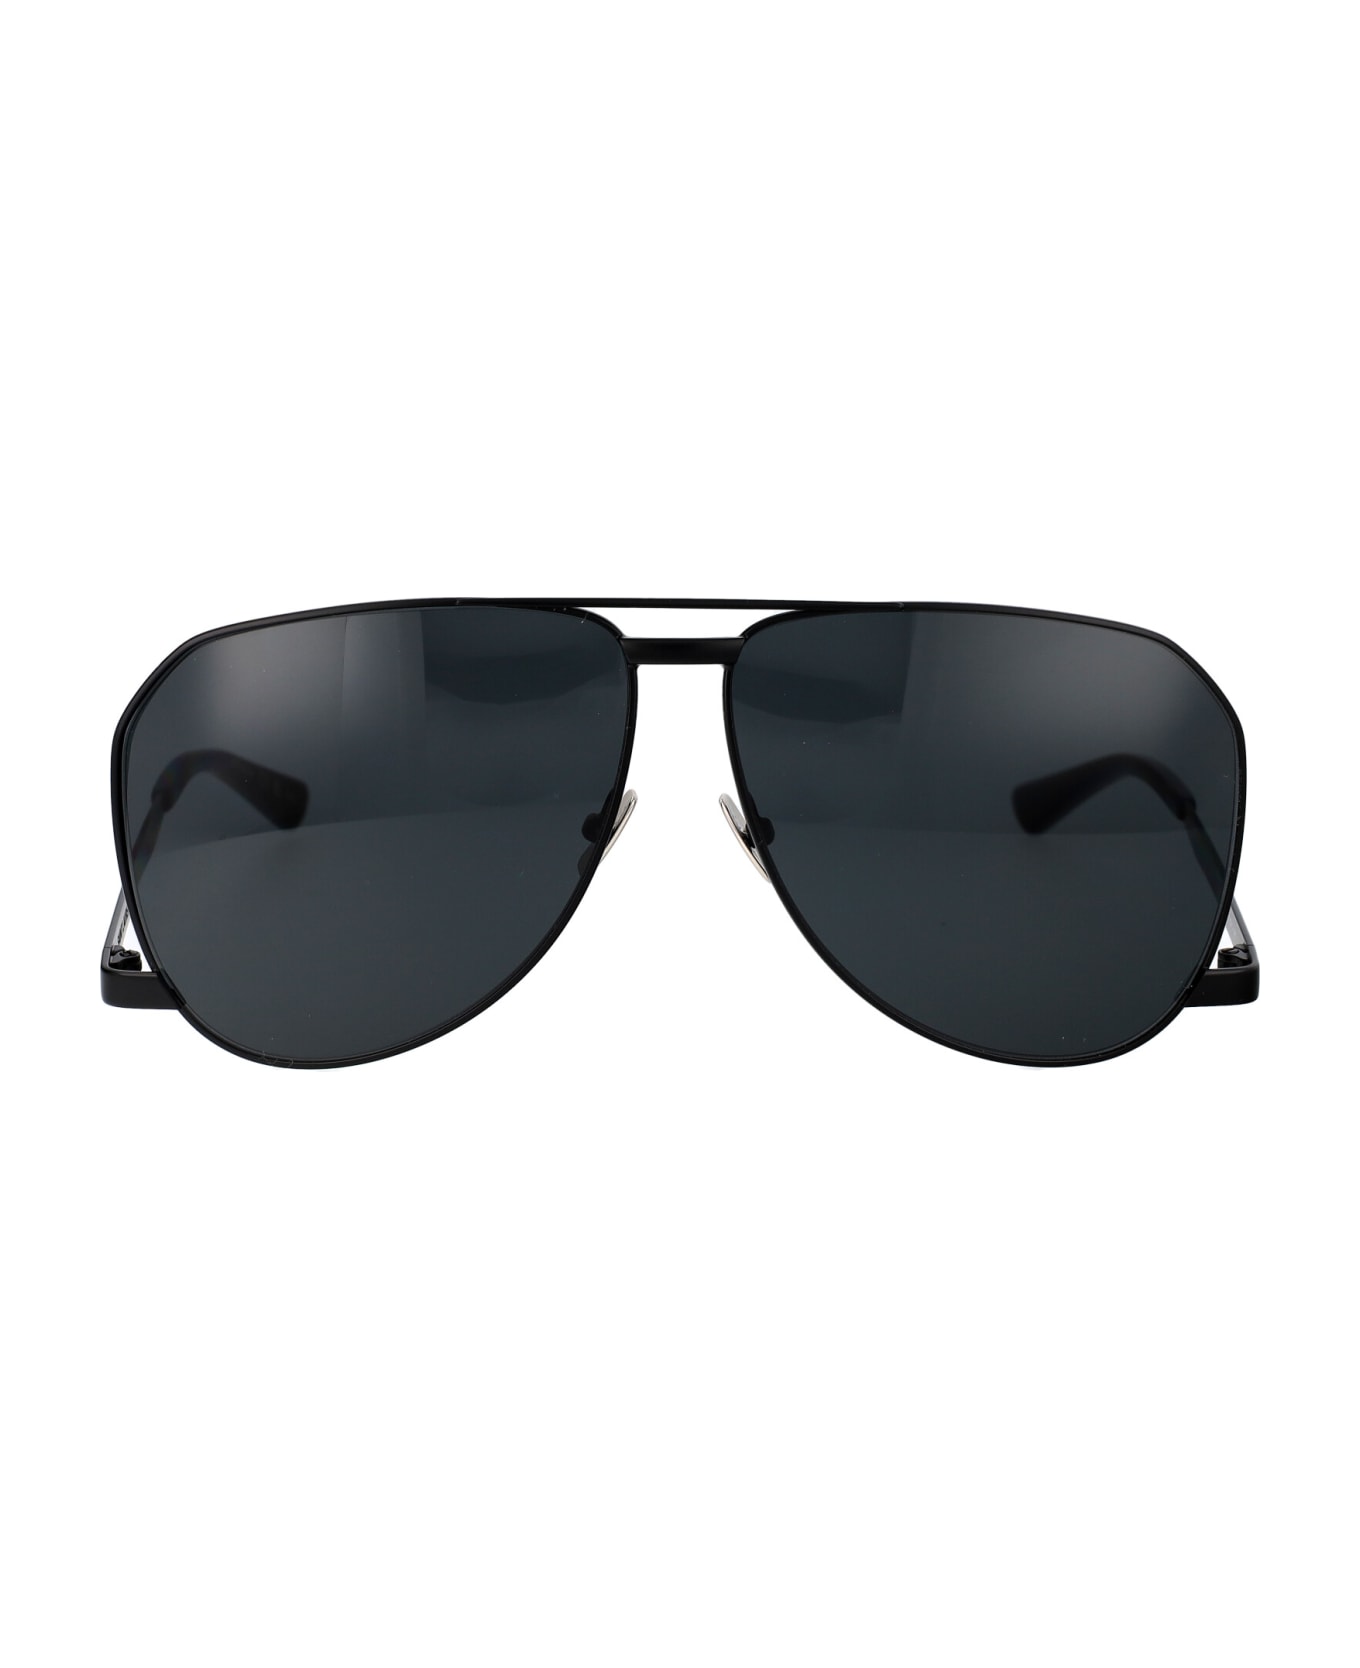 Saint Laurent Eyewear Sl 690 Dust Sunglasses - 001 BLACK BLACK BLACK